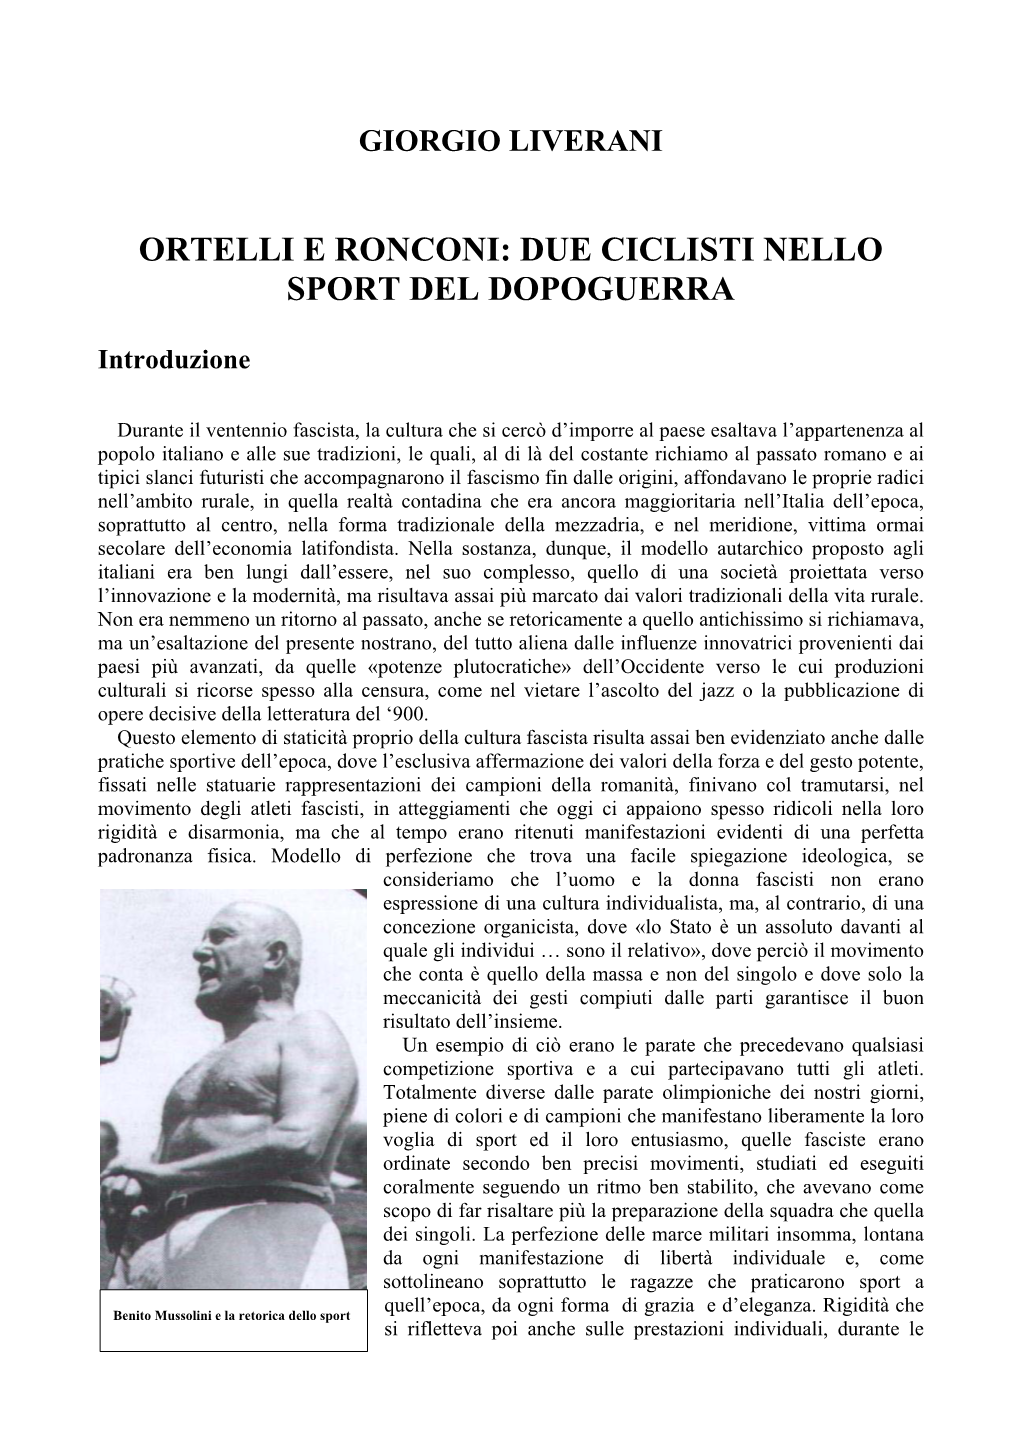 Ortelli E Ronconi: Due Ciclisti Nello Sport Del Dopoguerra